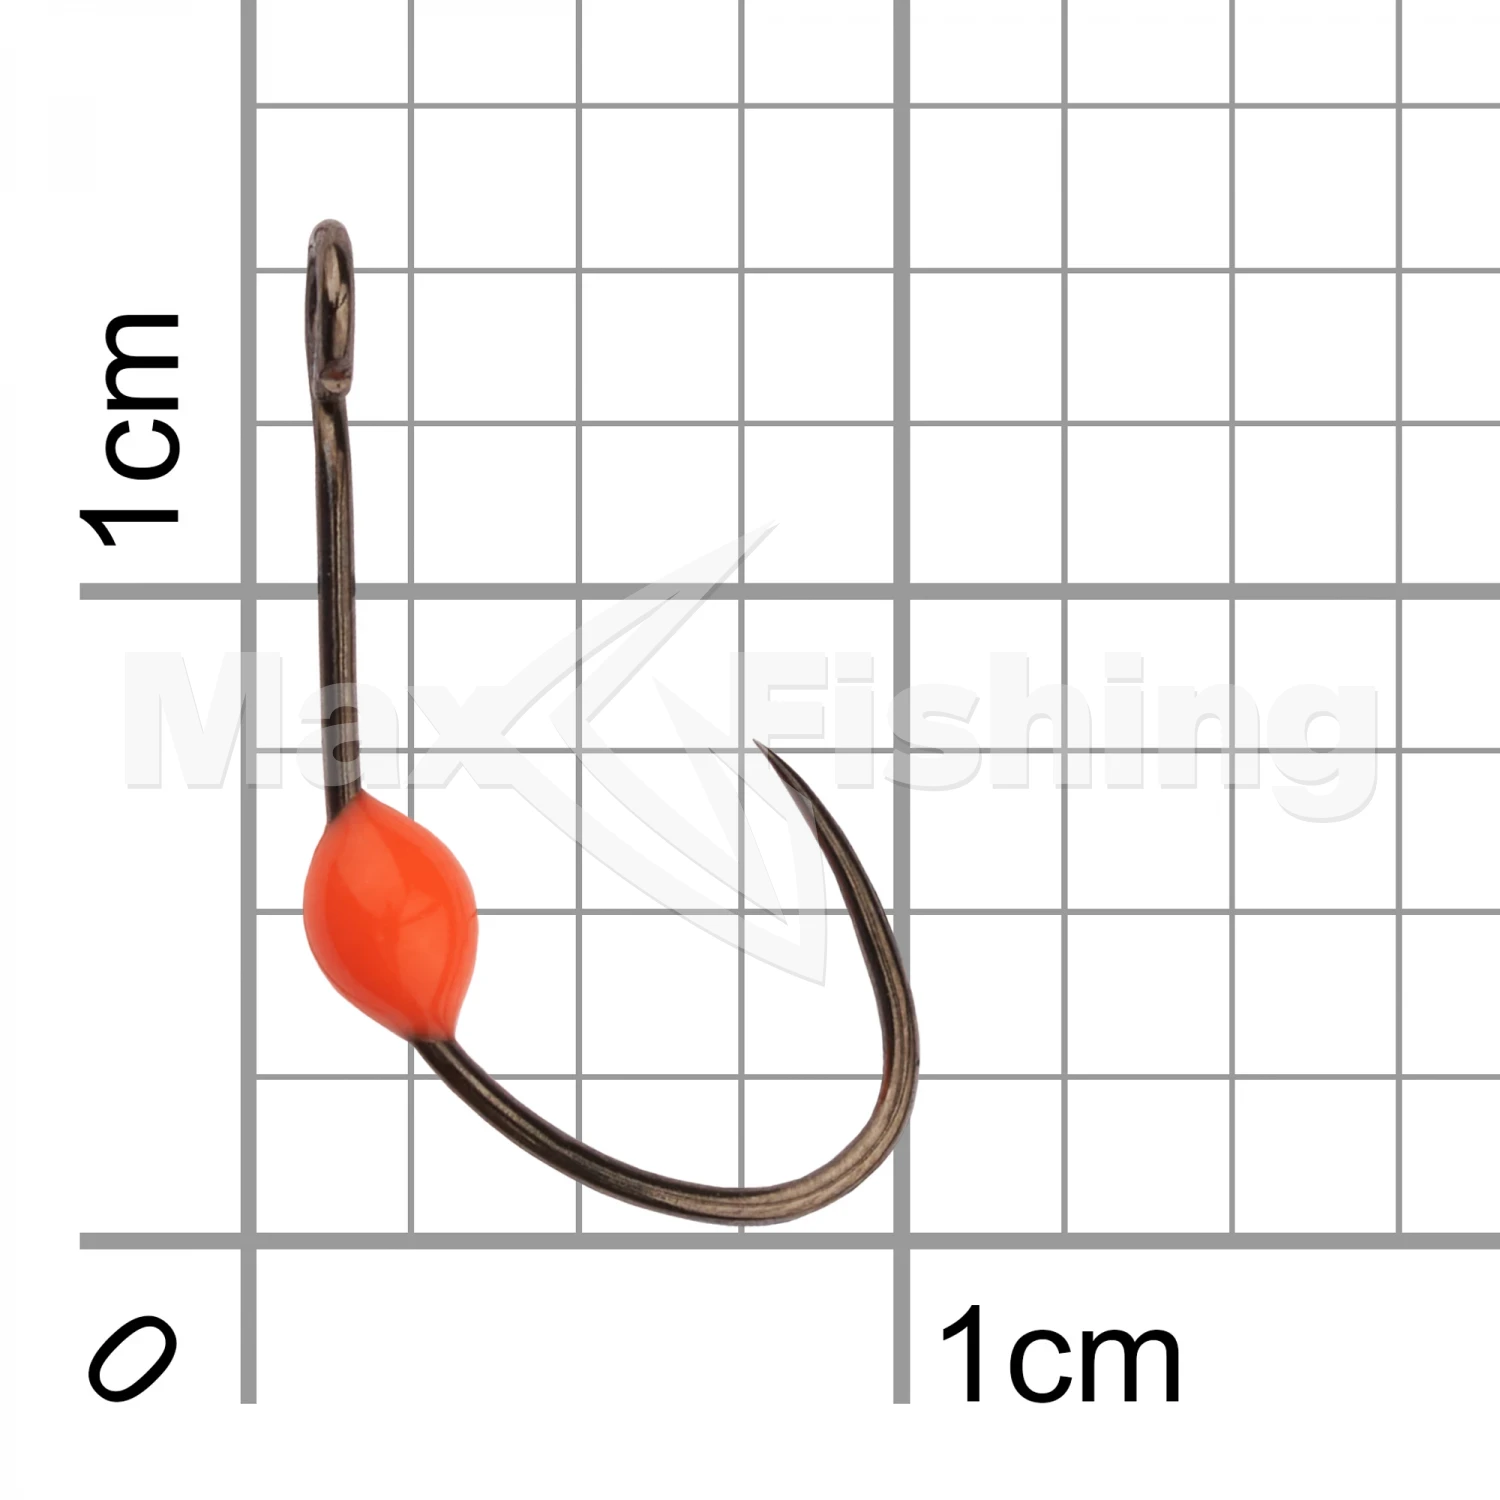 Крючок одинарный LureMax Trout LT37B Orange #4 (10шт)